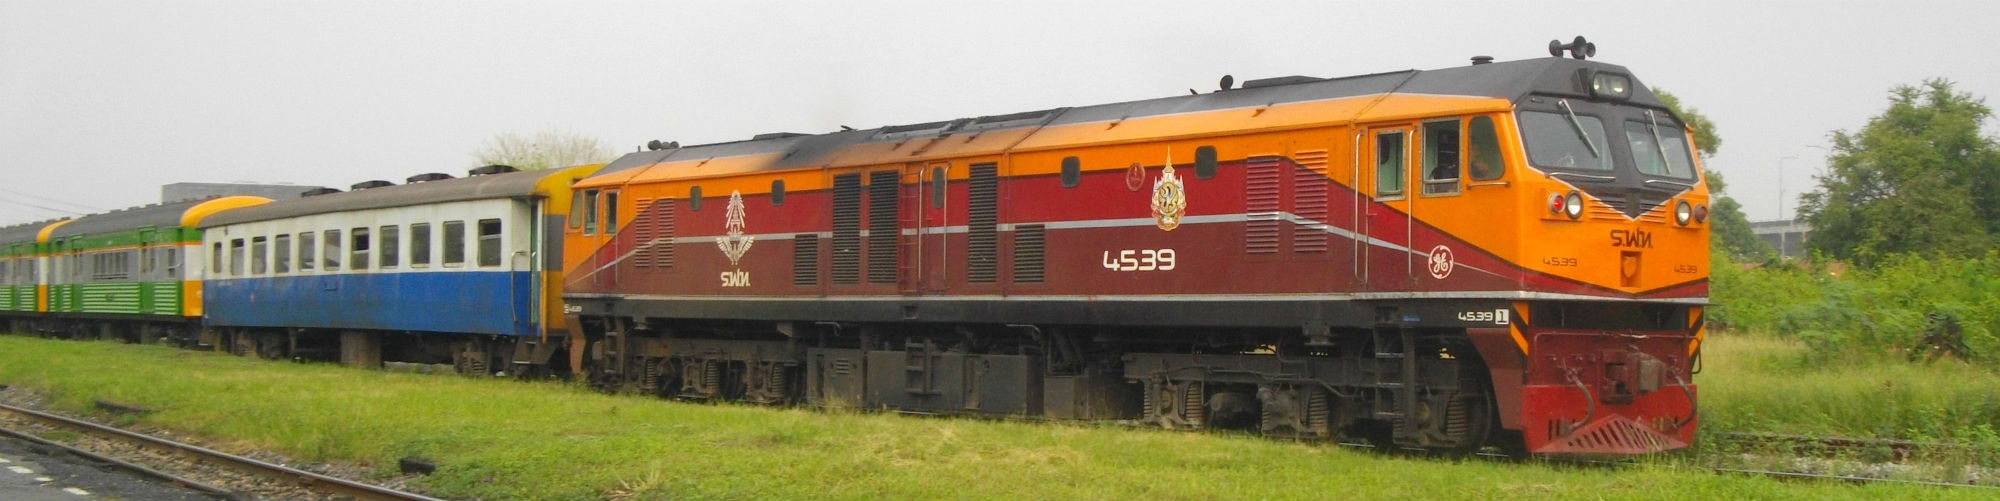 GE (1996) Locomotive Stock - Engine 4539